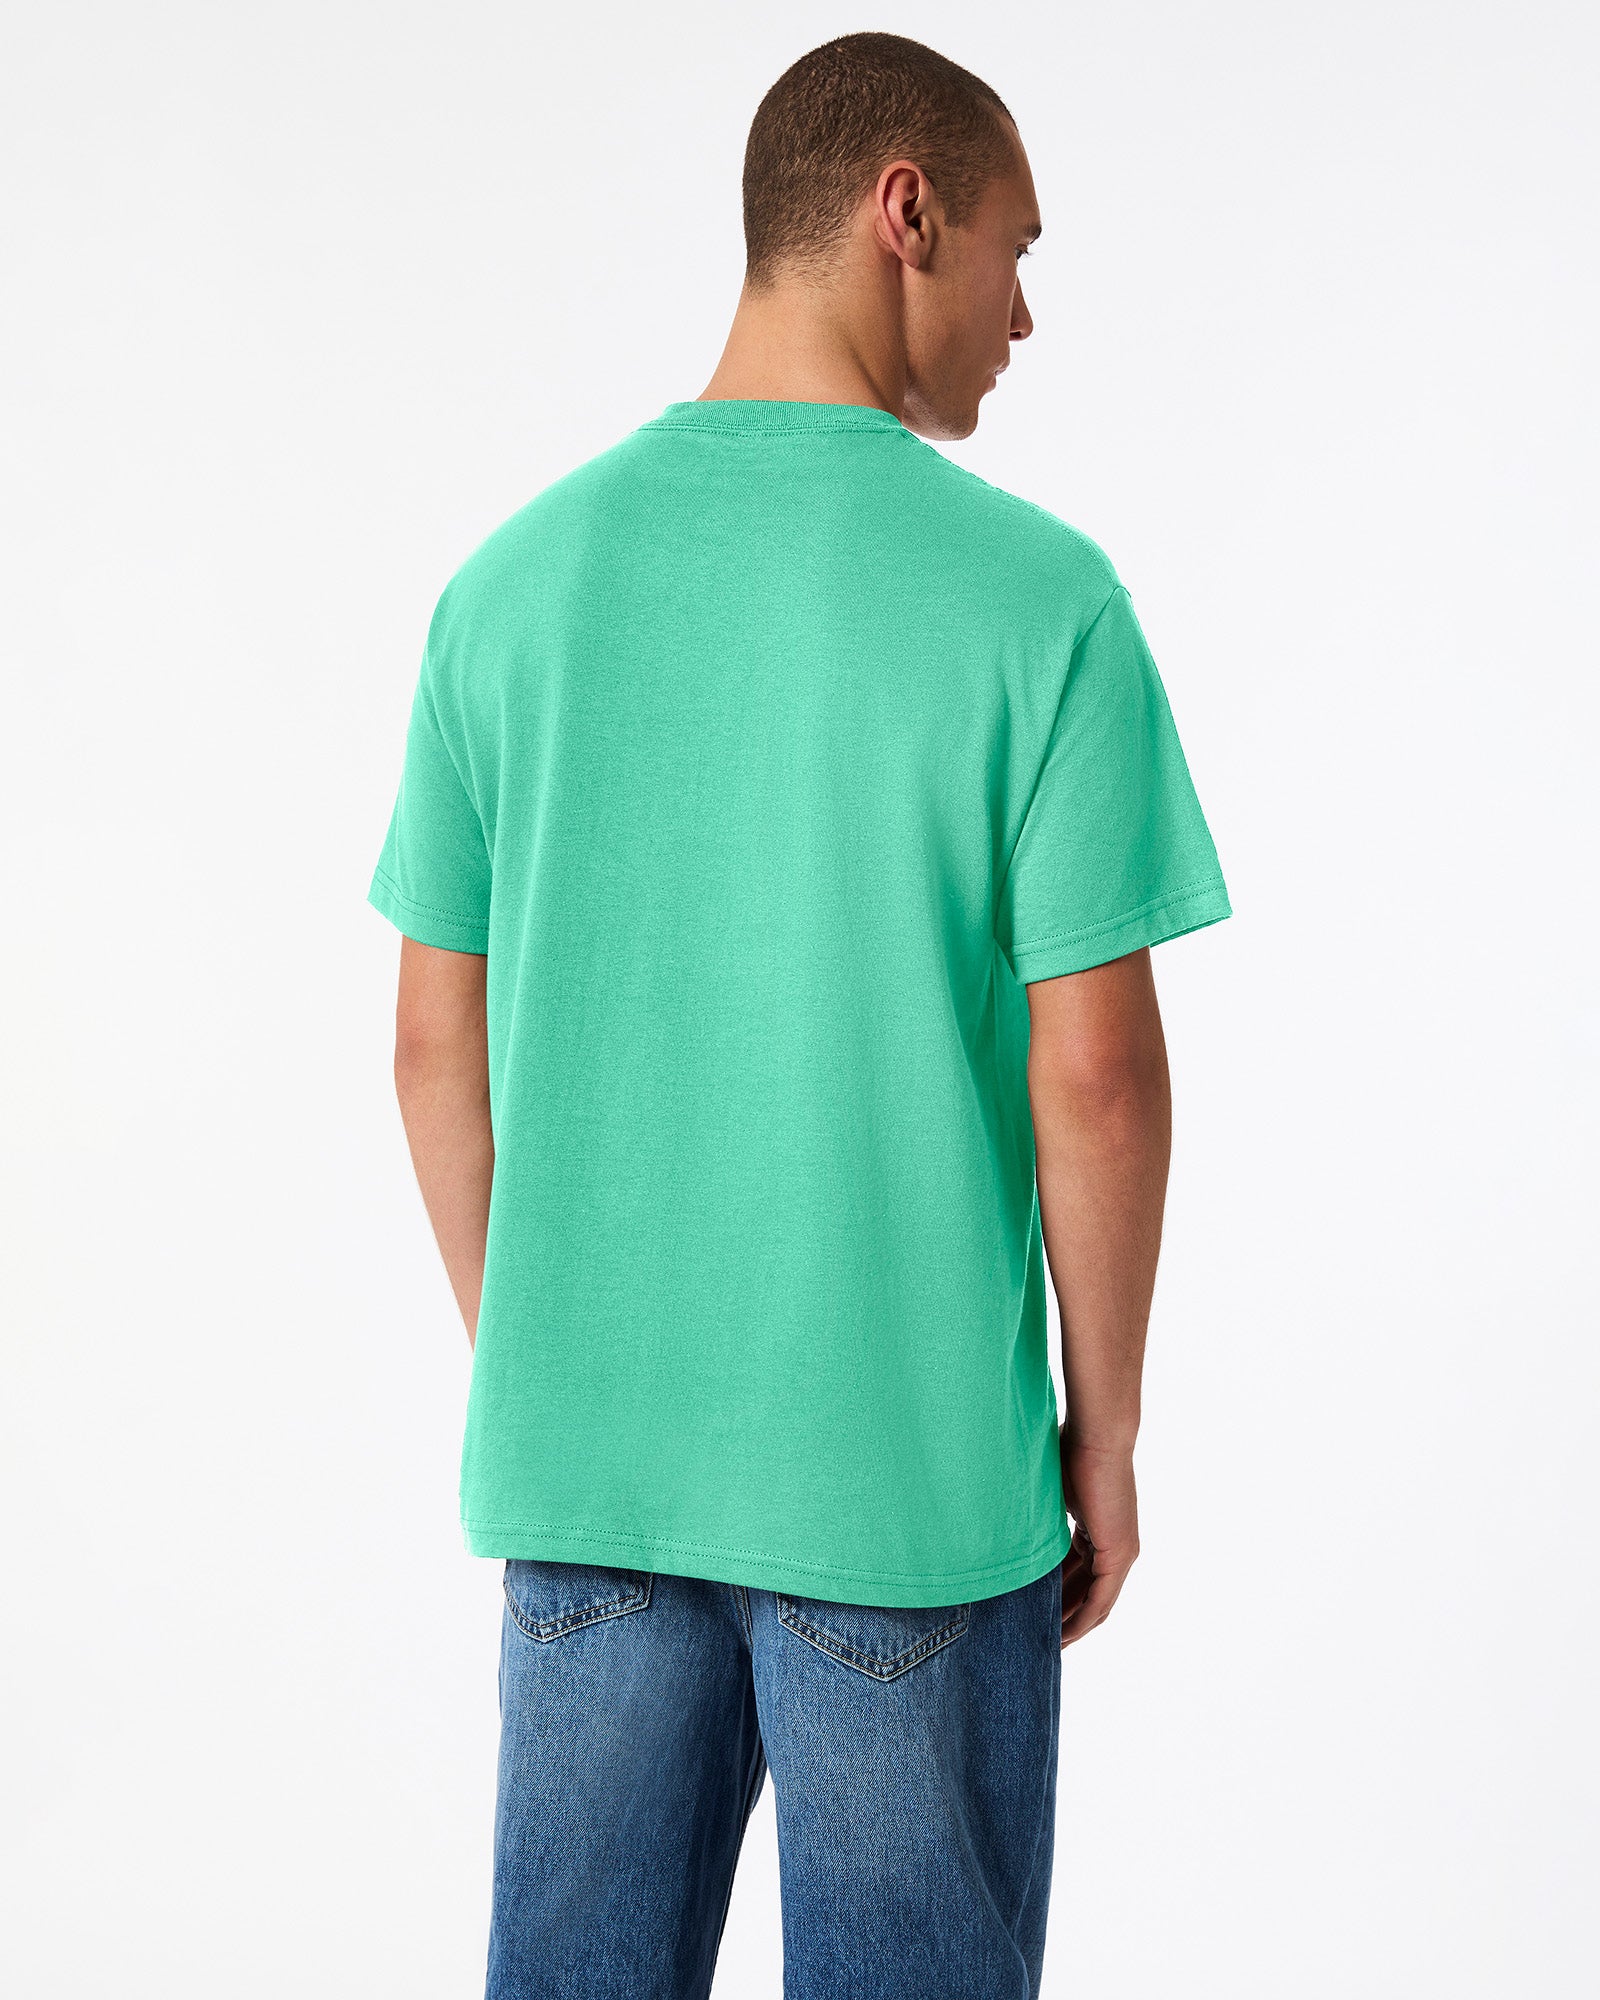 Heavyweight Unisex T-Shirt - Celadon